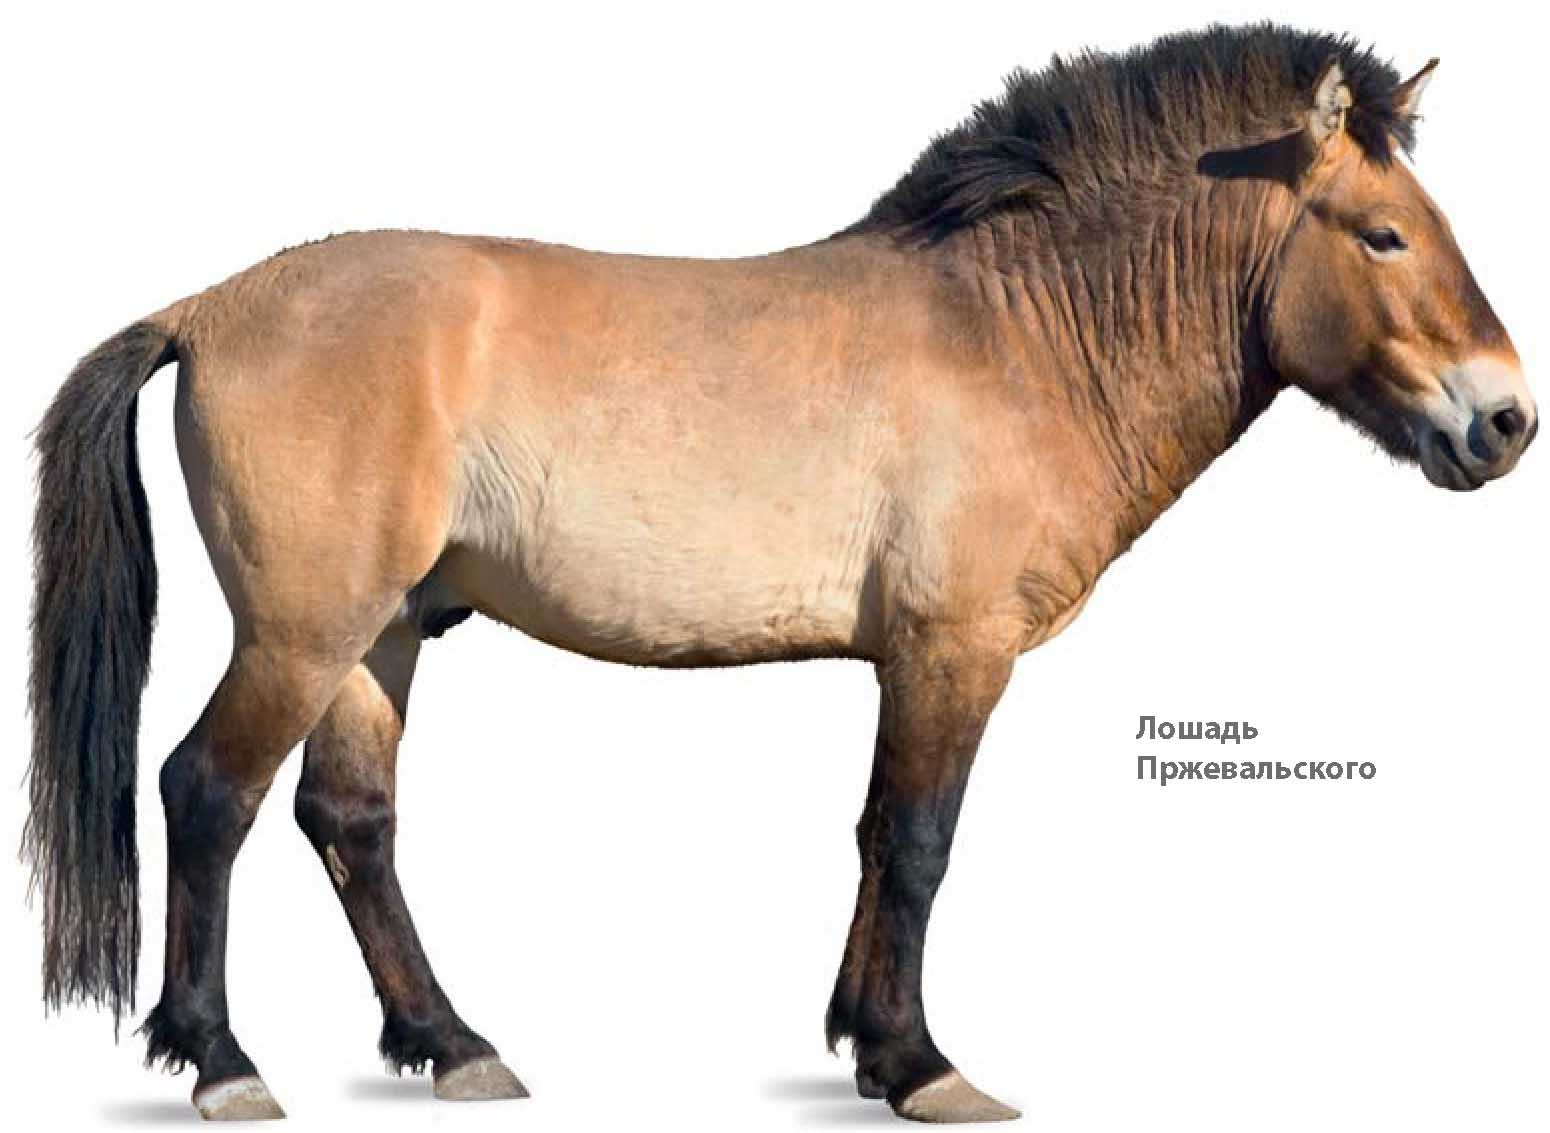 Родственники лошадей: ослы, зебры, полуослы и лошадь Пржевальского.